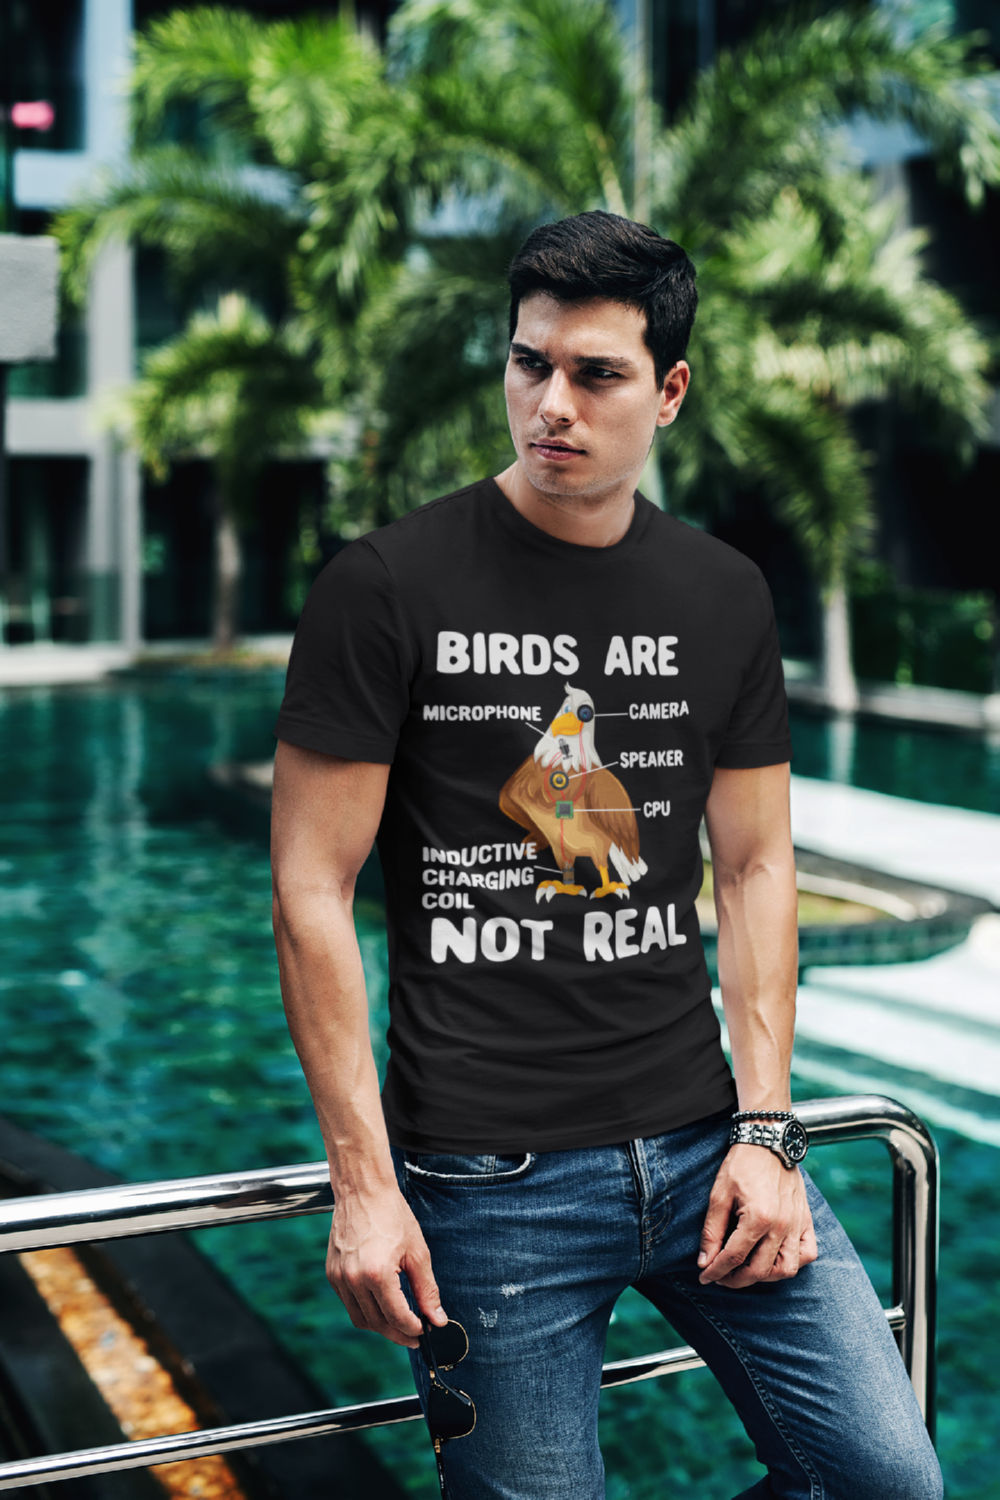 T-Shirt Design with Bird Niche